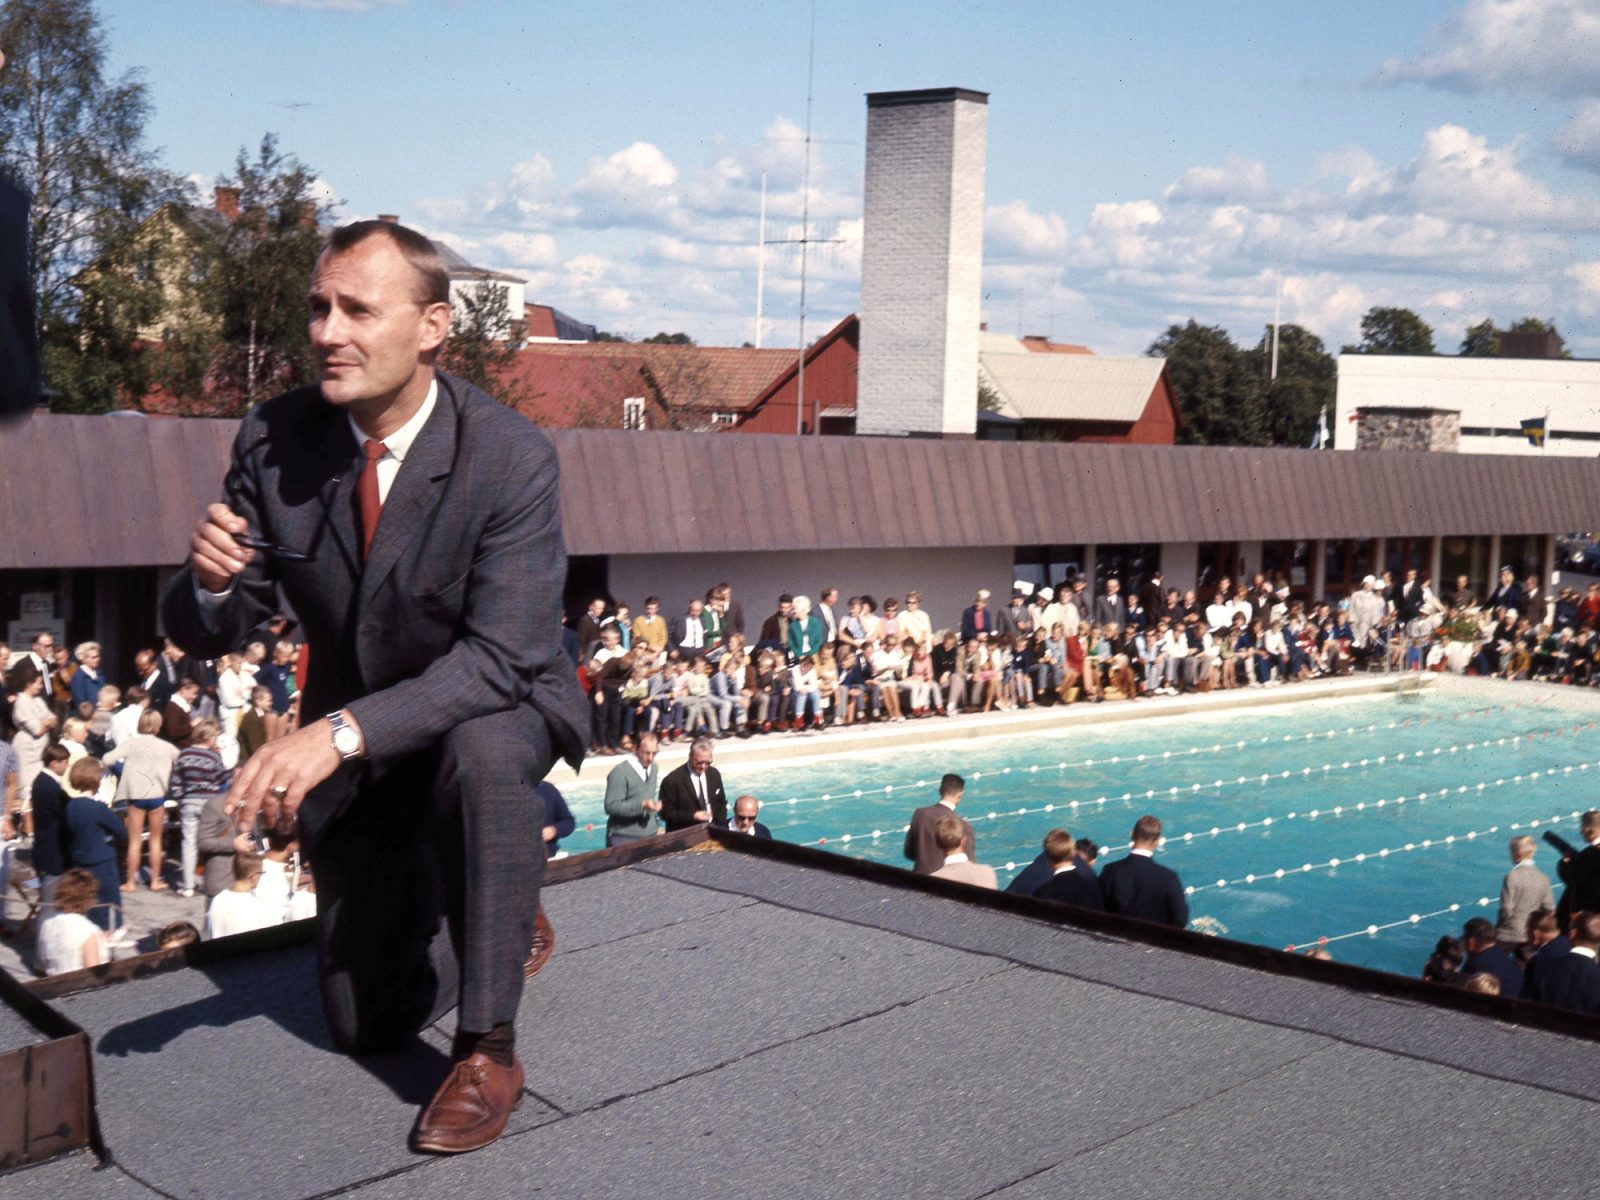 En kostymklädd Ingvar Kamprad står på huk på ett tak med mikrofon i handen, i bakgrunden syns en pool och många människor.